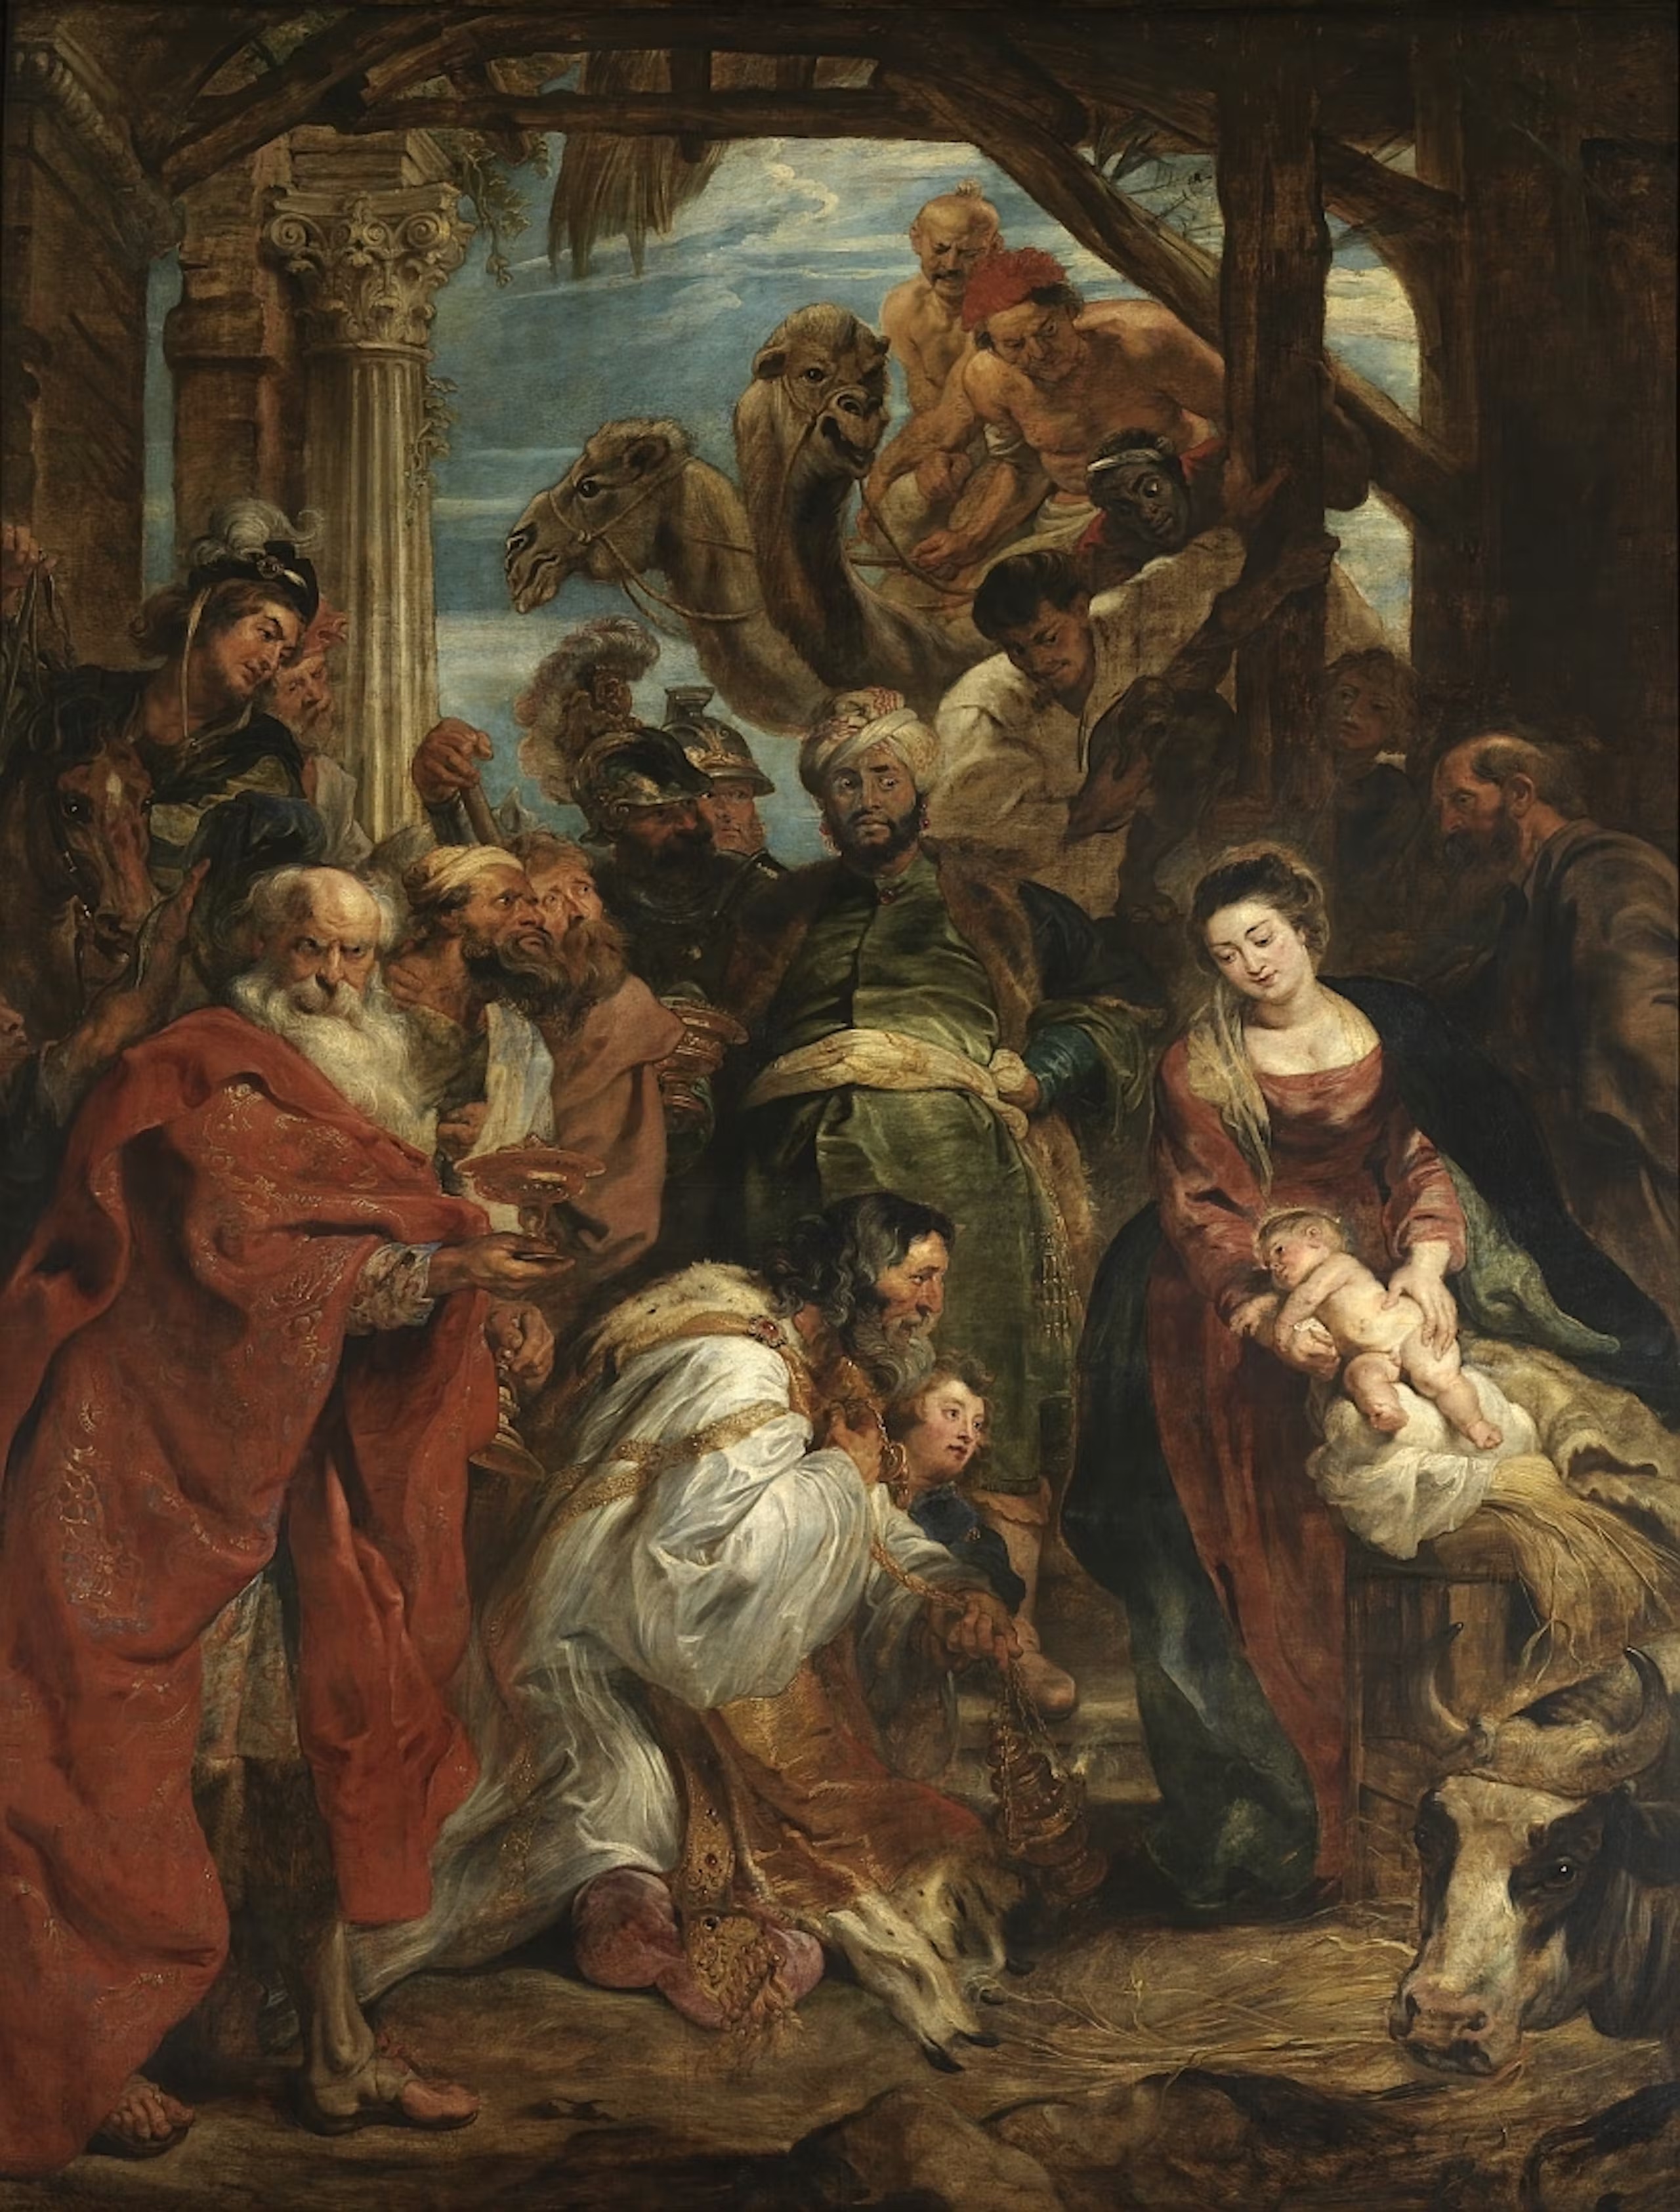 Peter Paul Rubens, Aanbidding door de koningen, 1624-1625, KMSKA, olieverf op paneel, 447 x 336 cm, inv. 298, public domain